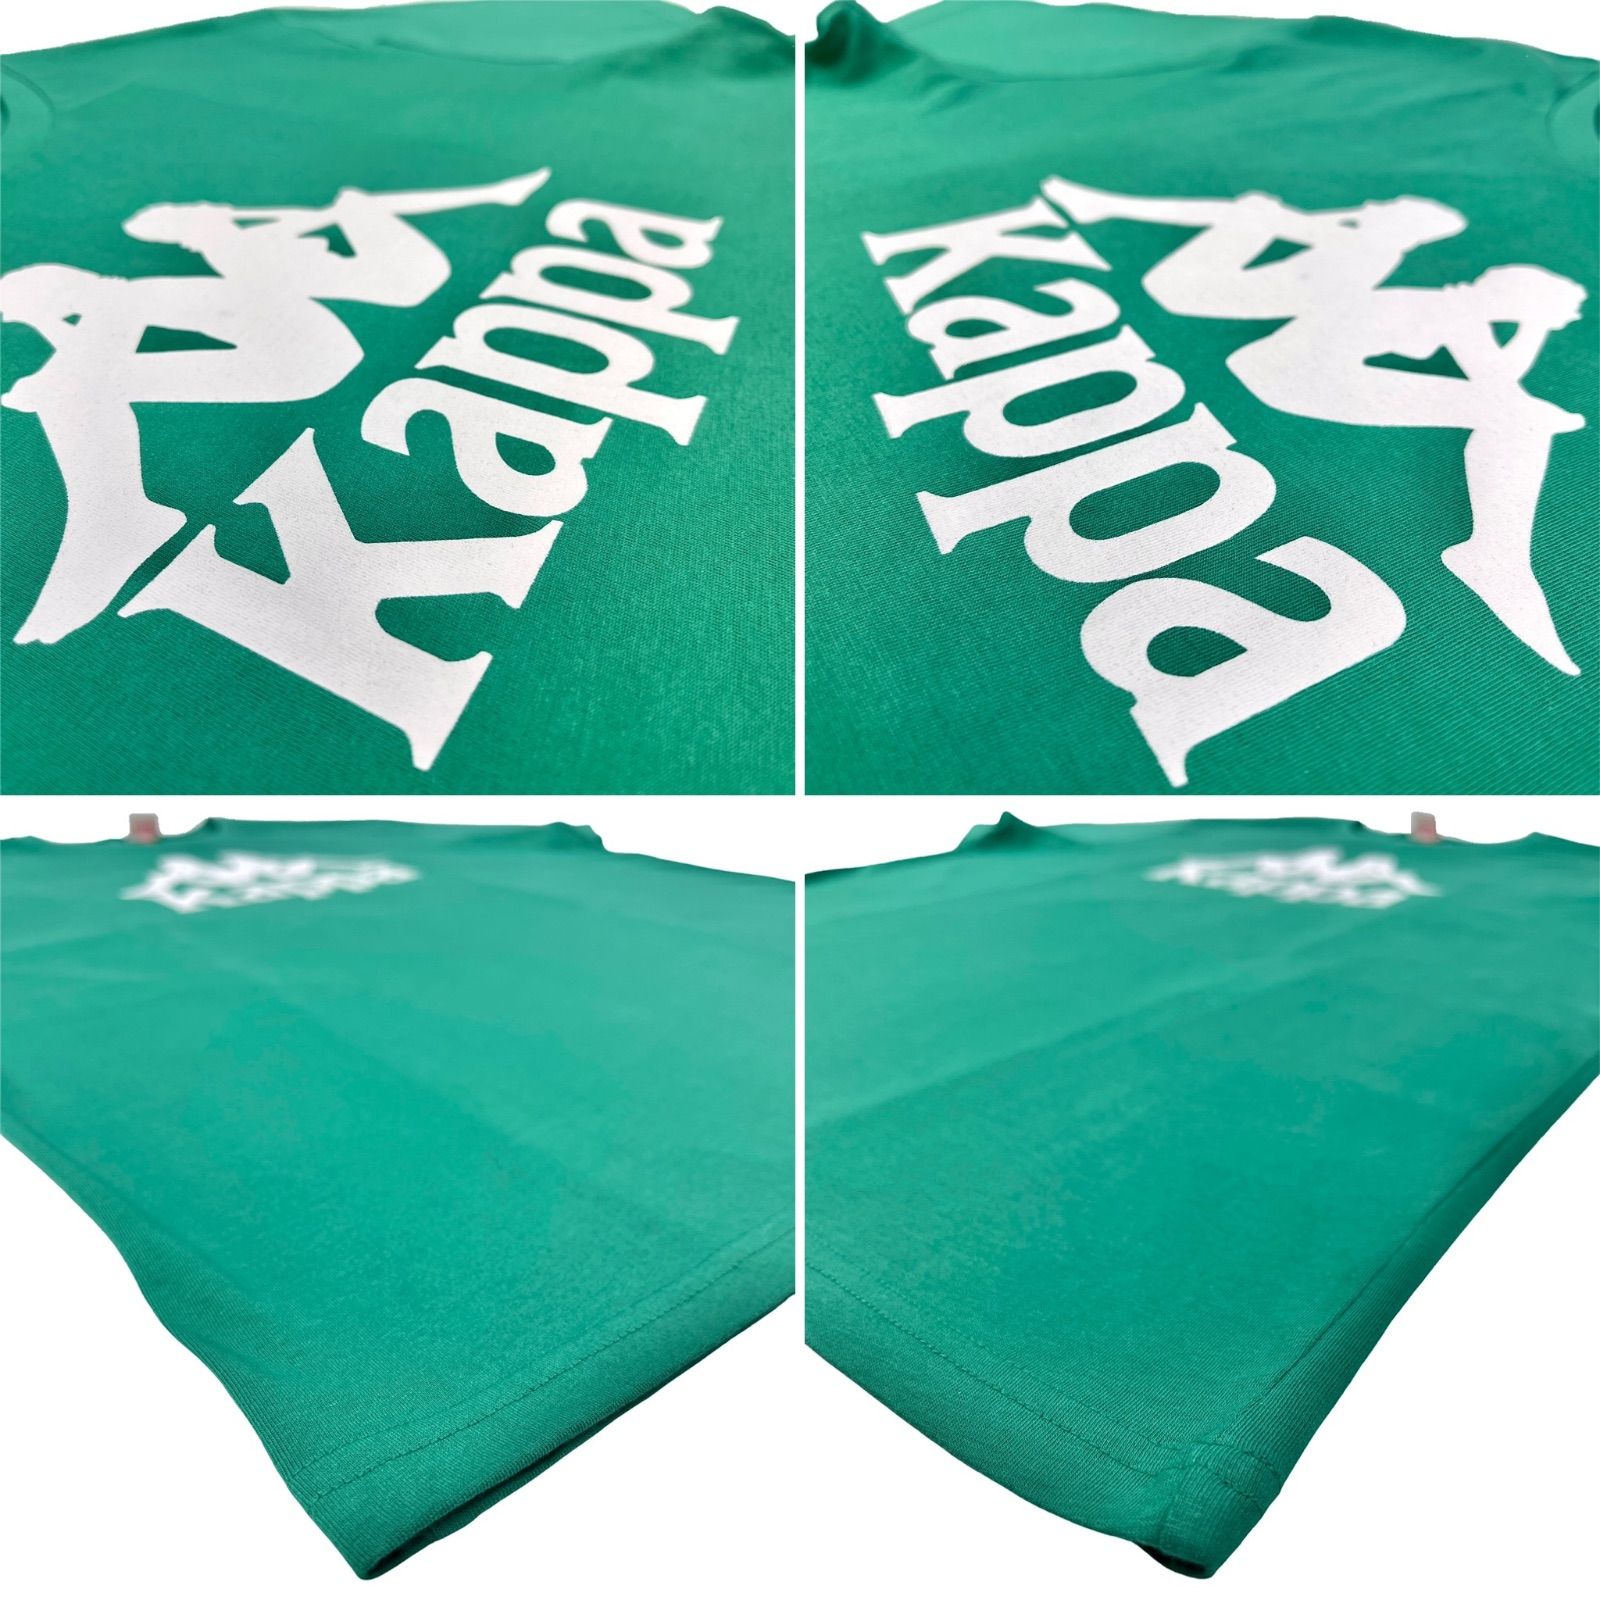 Kappa カッパ OMINI オミニ ブランド クラシック ロゴ Tシャツ アダムとイヴ 背中合わせ 三角座り イタリア サッカー ユヴェントス ユニフォーム スポーツブランド 海外買付 インポート 緑 グリーン スリムフィット オーバーサイズ M L XL